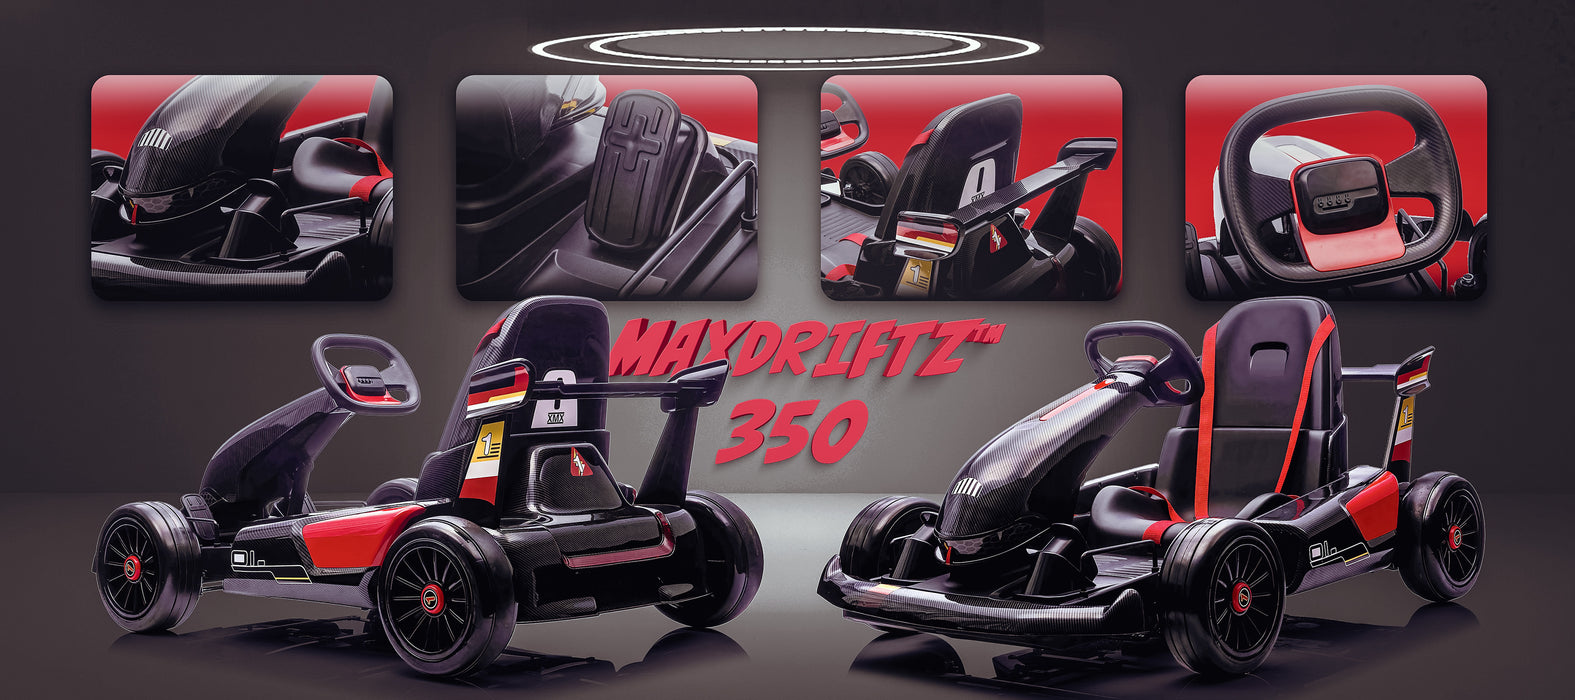 Drift Kart électrique Roue LED 350W à product specific price with tax